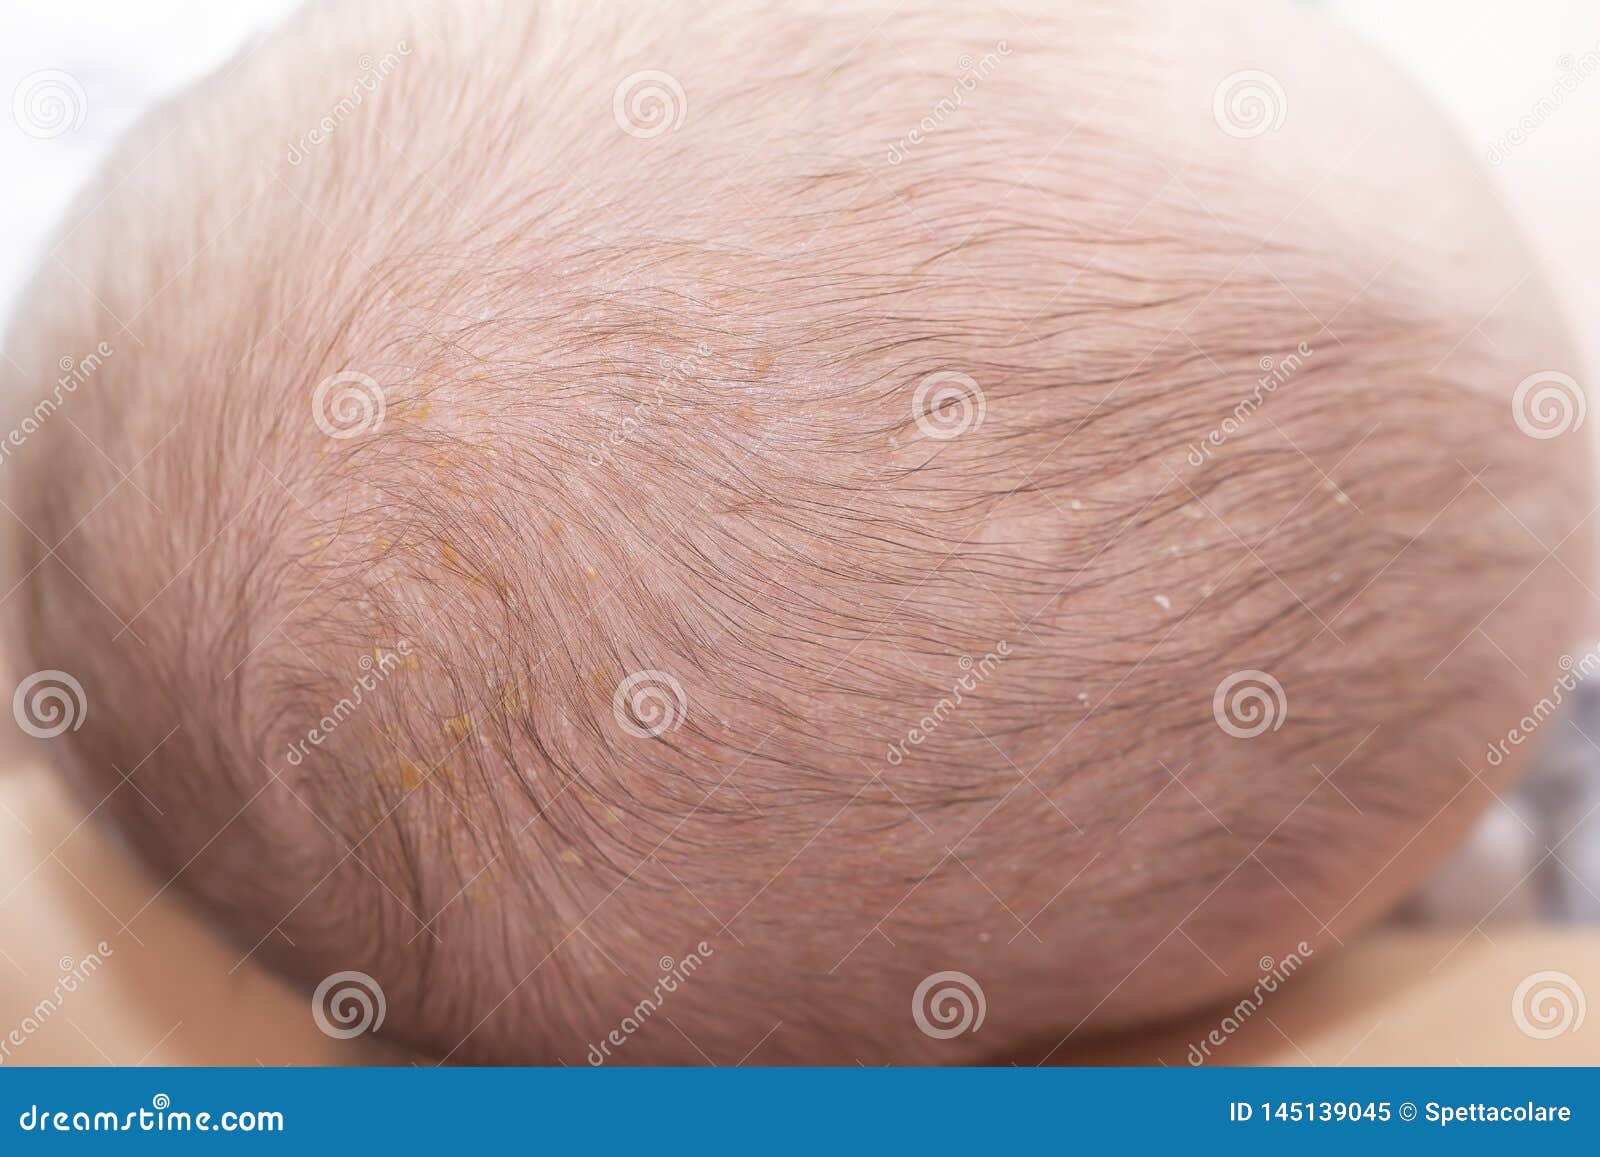 newborn head with cradle cap